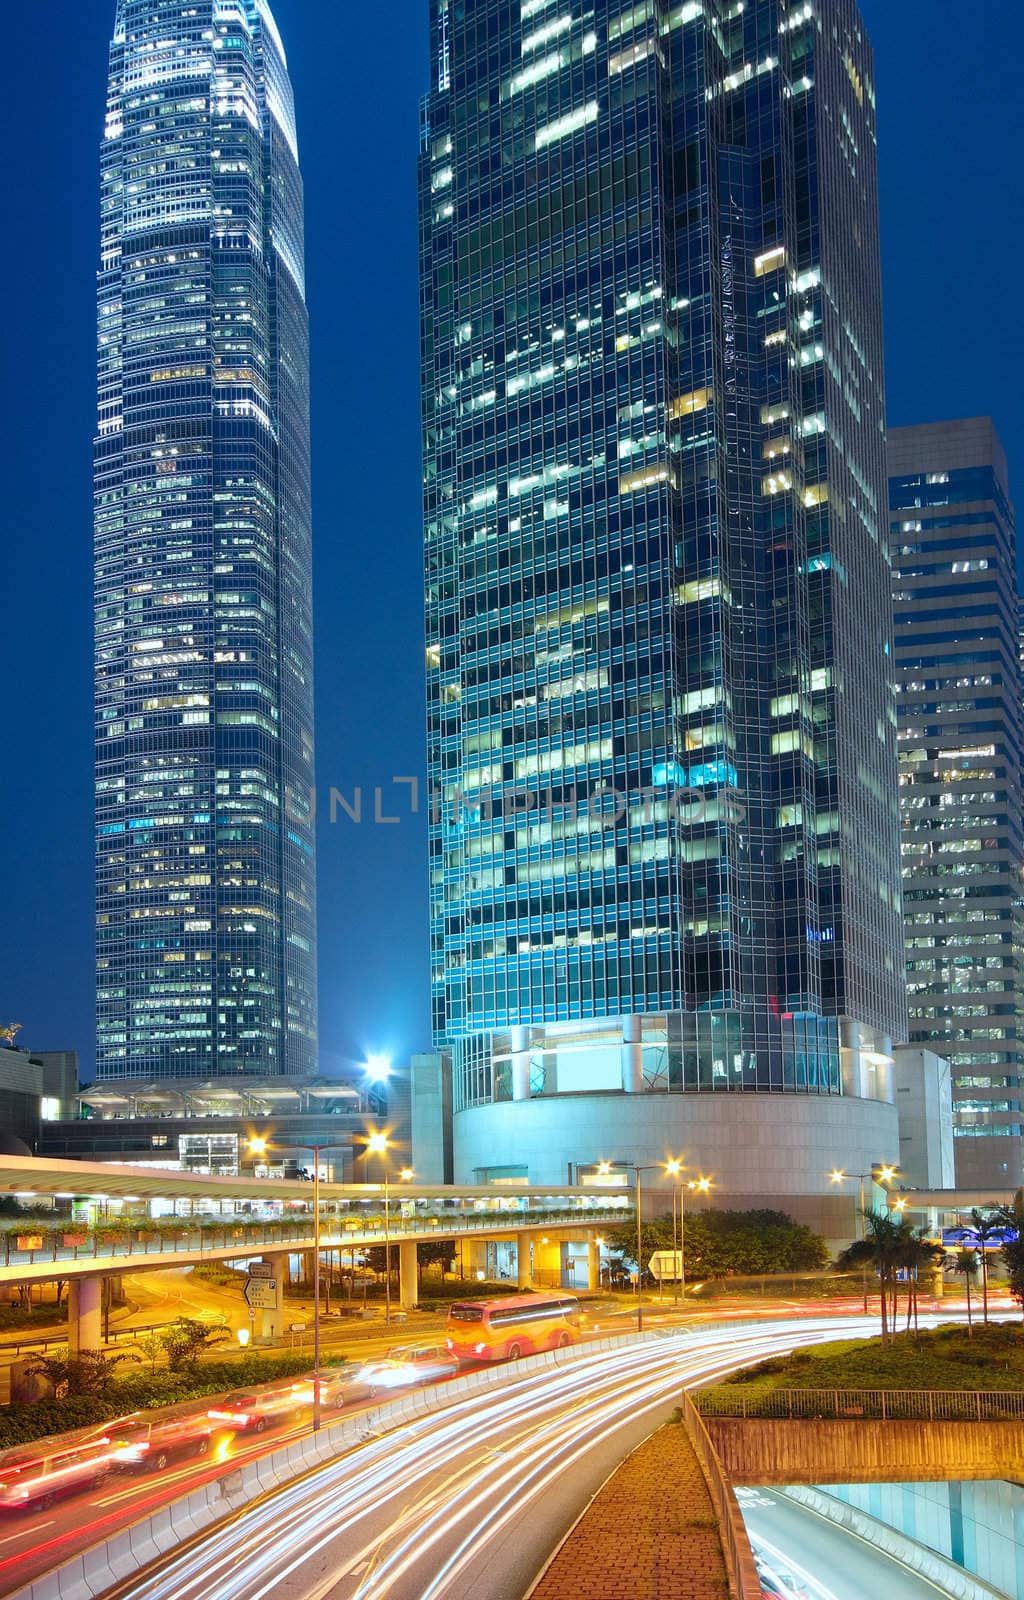 Modern Urban City with Freeway Traffic at Night, hong kong